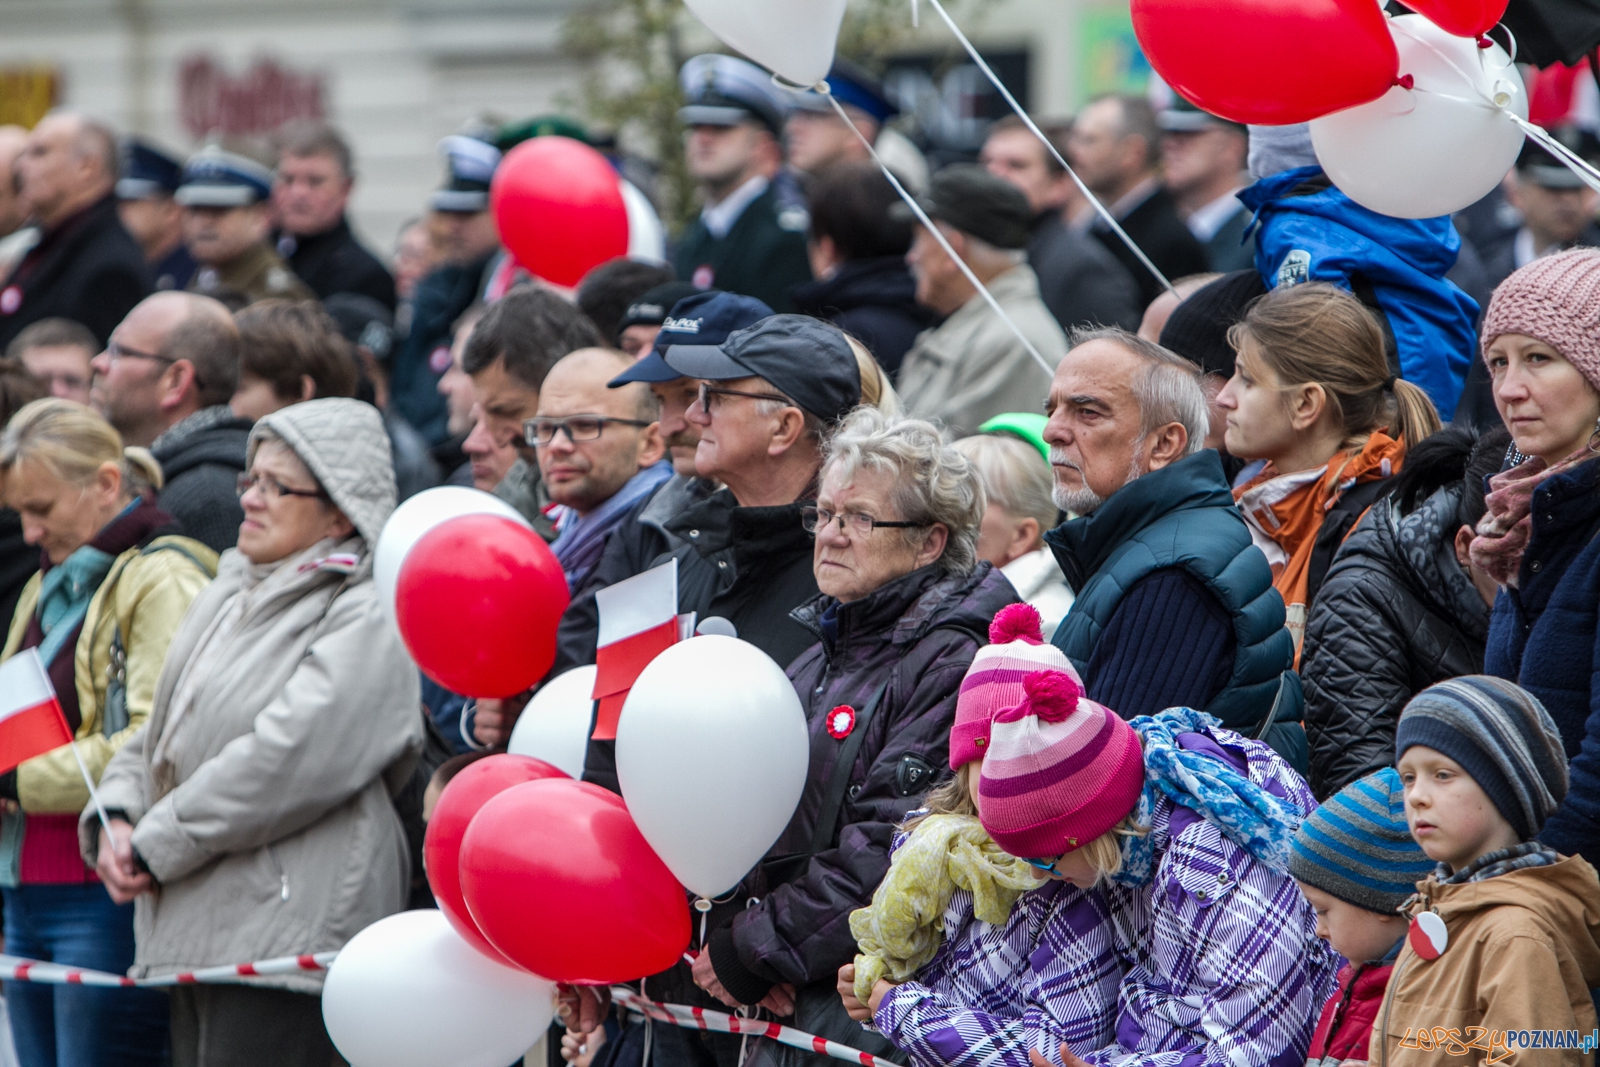 Narodowy Dzień Niepodległości 2015 - 11.11.2015 r.  Foto: LepszyPOZNAN.pl / Paweł Rychter